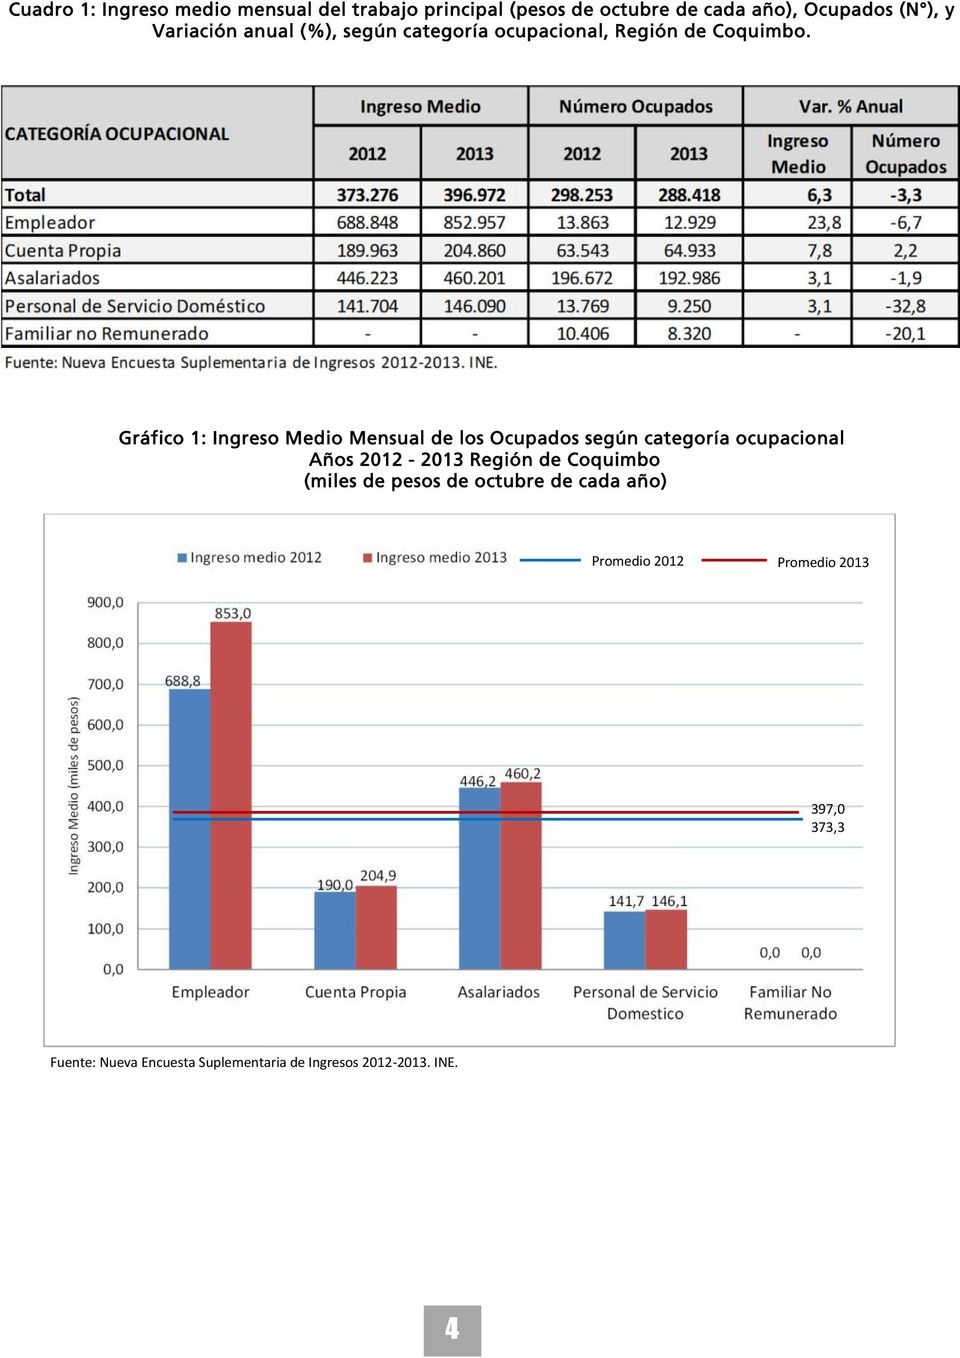 Gráfico 1: Ingreso Medio Mensual de los Ocupados según categoría ocupacional Años 2012-2013 Región de